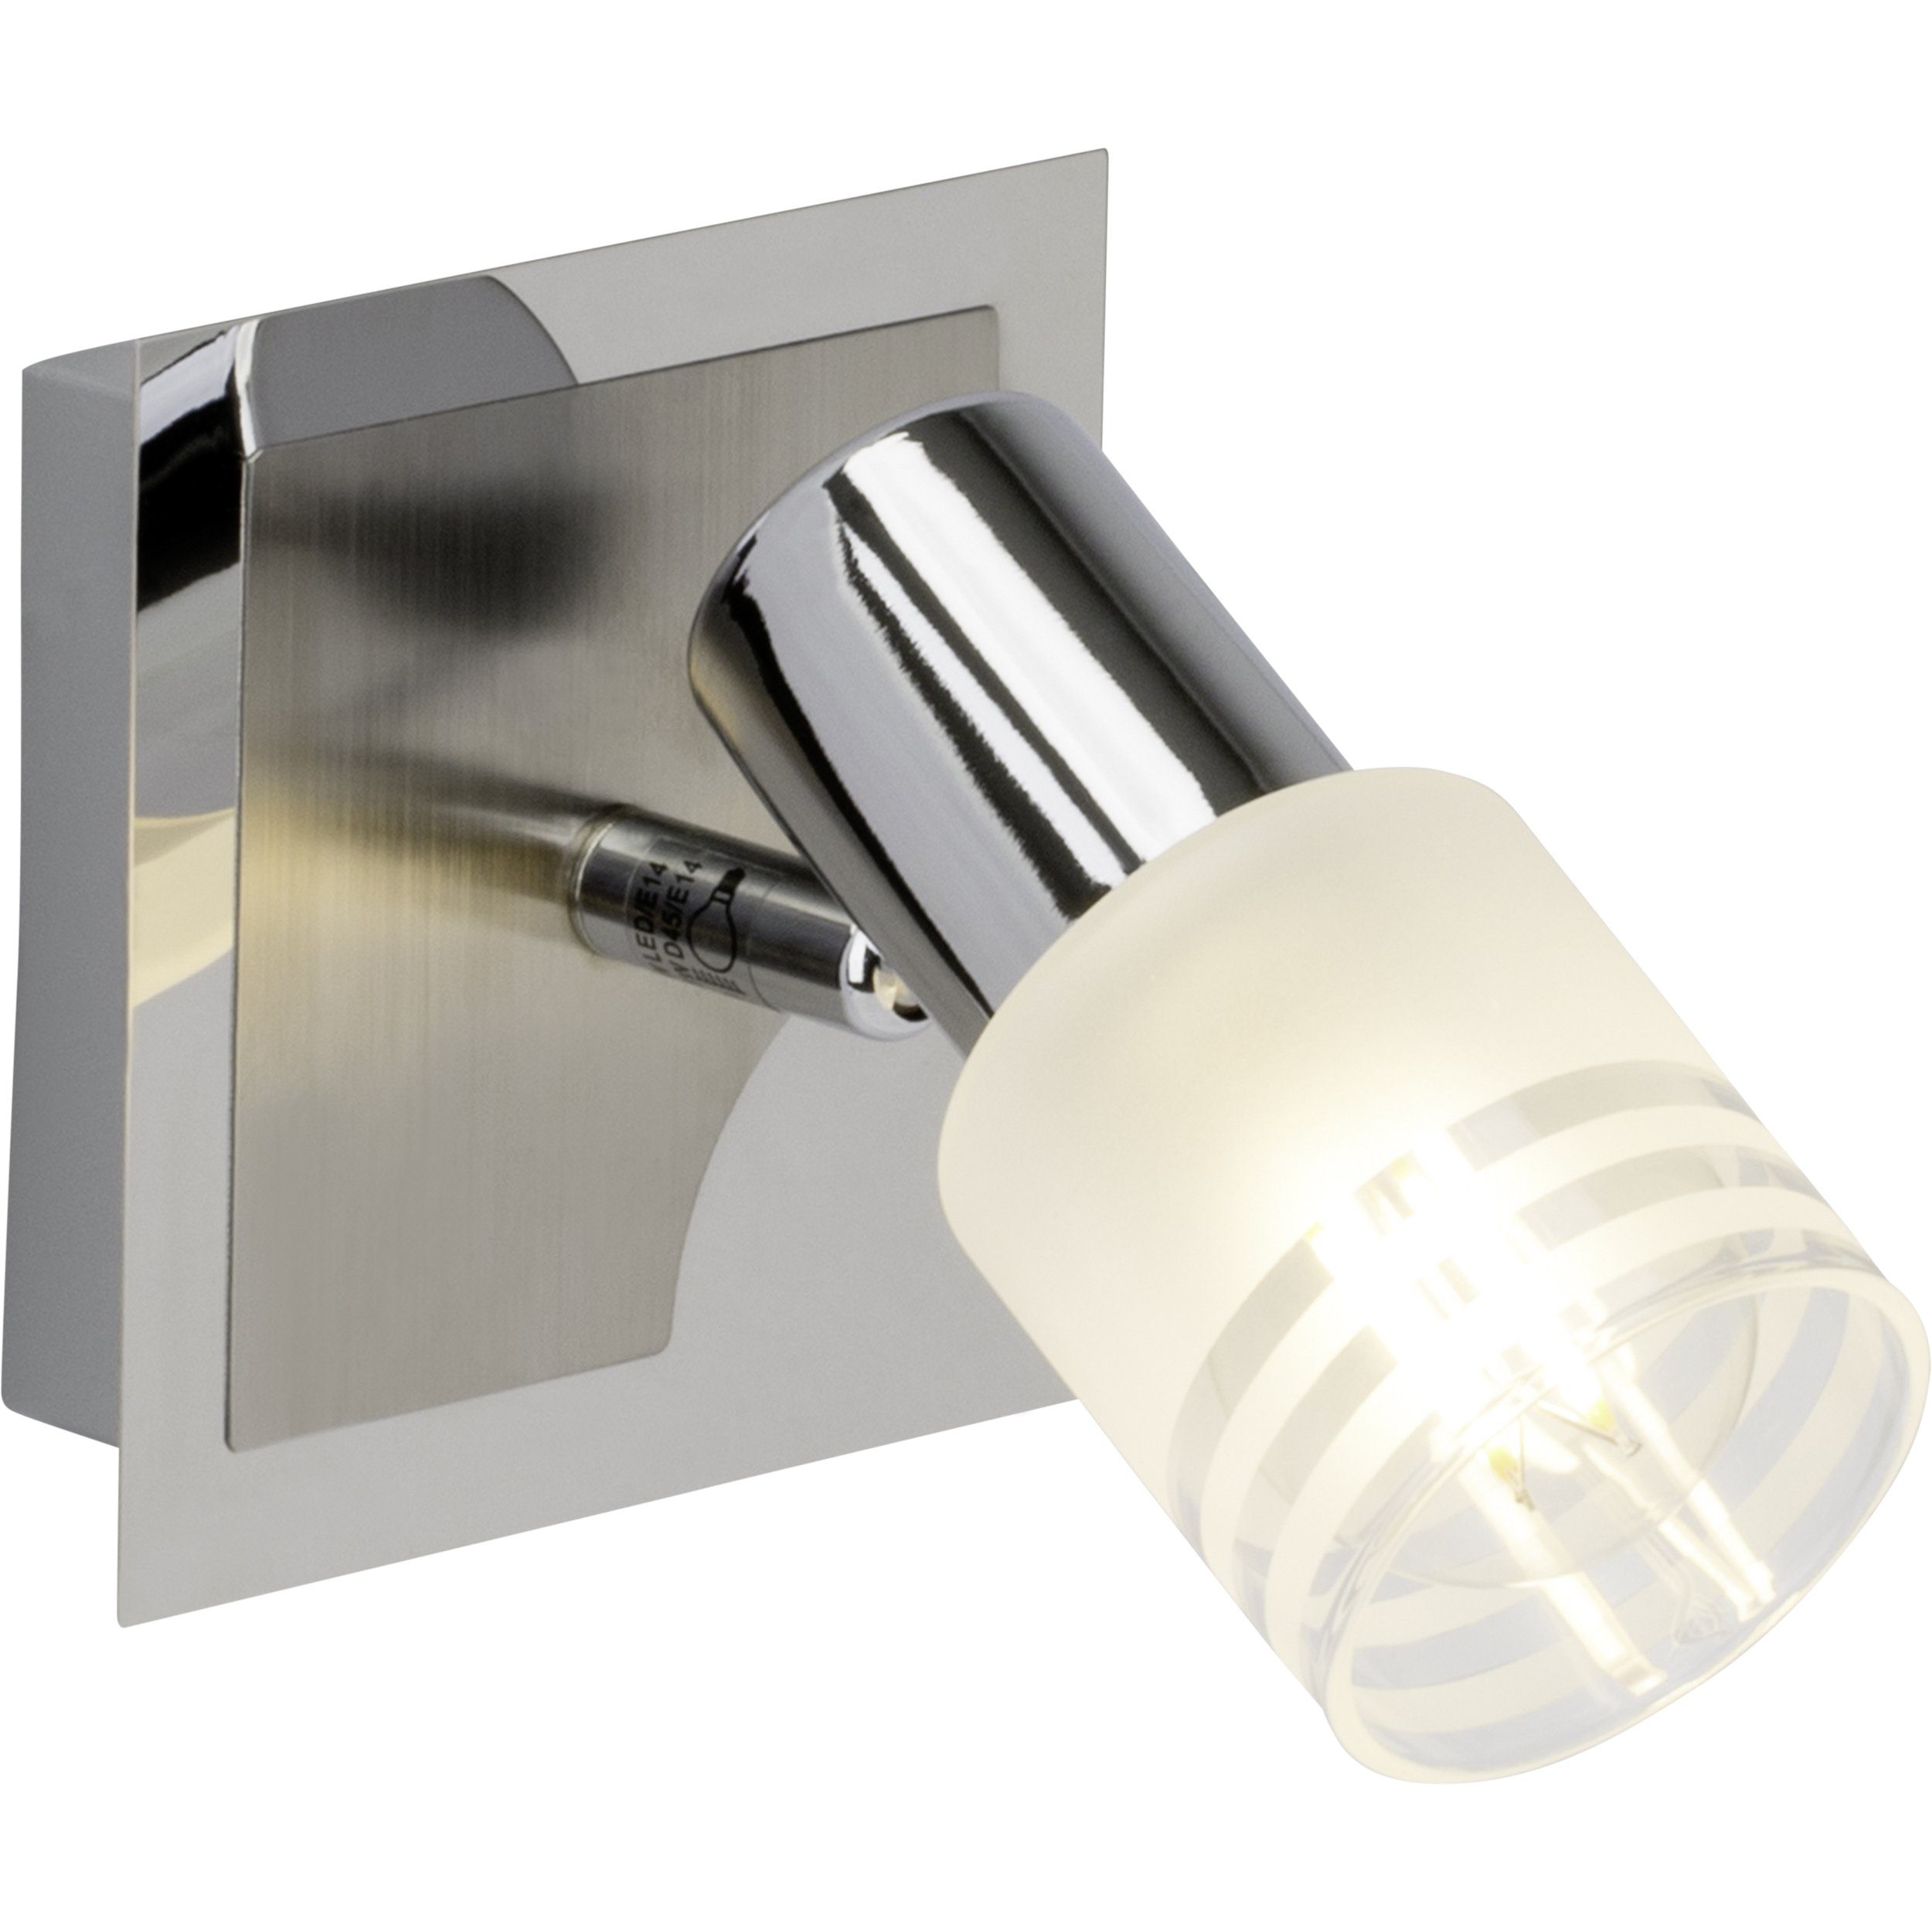 Lightbox Deckenleuchte, LED wechselbar, warmweiß, Wandspot, schwenkbar, 15 x 11 x 15 cm, E14, 400 lm, 2700 K, inkl. LED | Deckenlampen